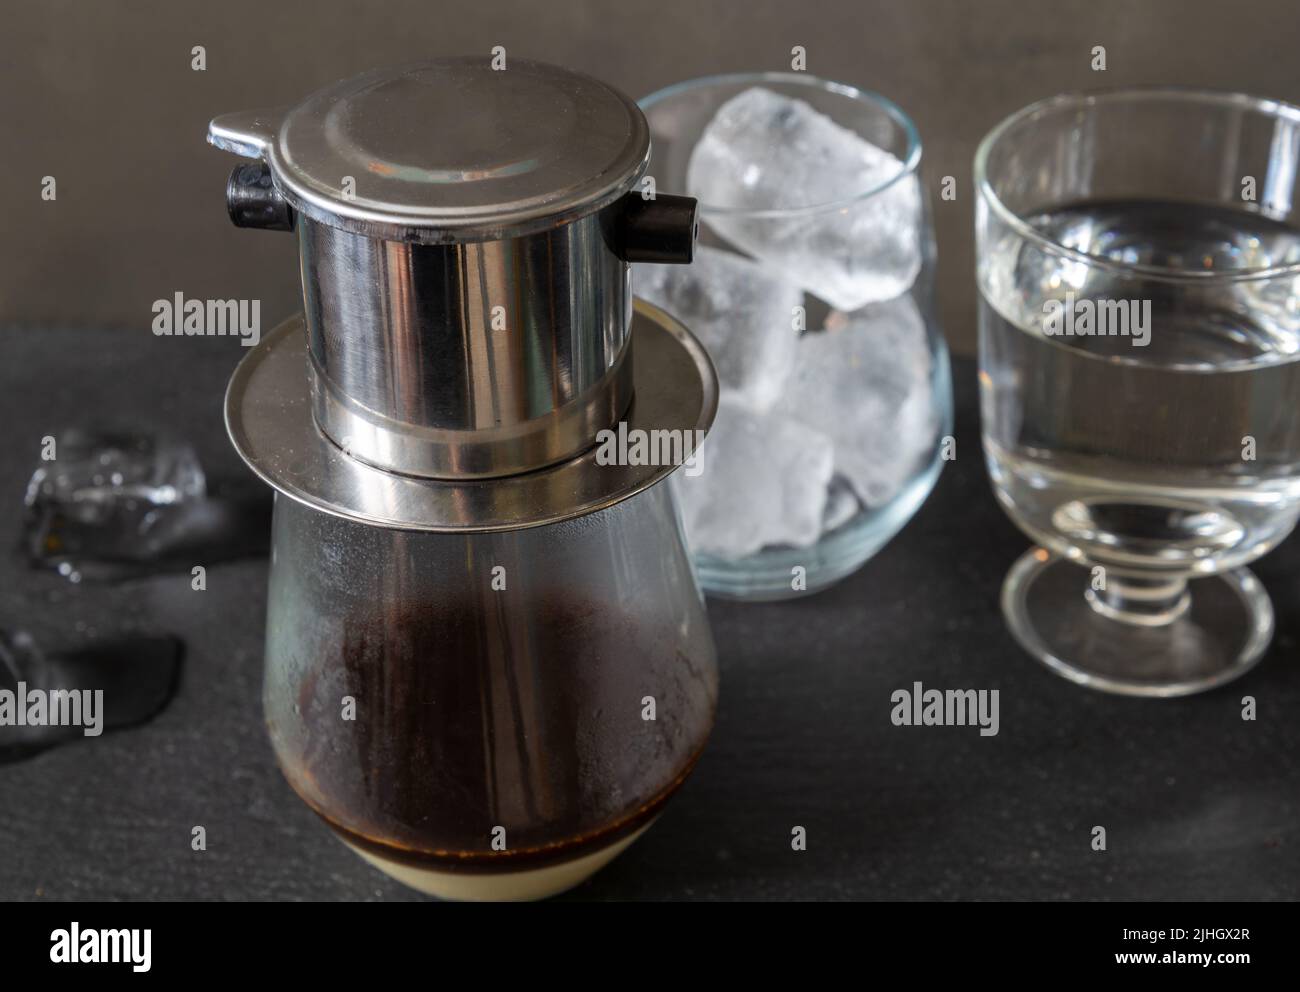 Un tradizionale modo vietnamita di preparare il caffè utilizzando un filtro speciale - phin. Caffè con latte condensato e ghiaccio. Foto Stock